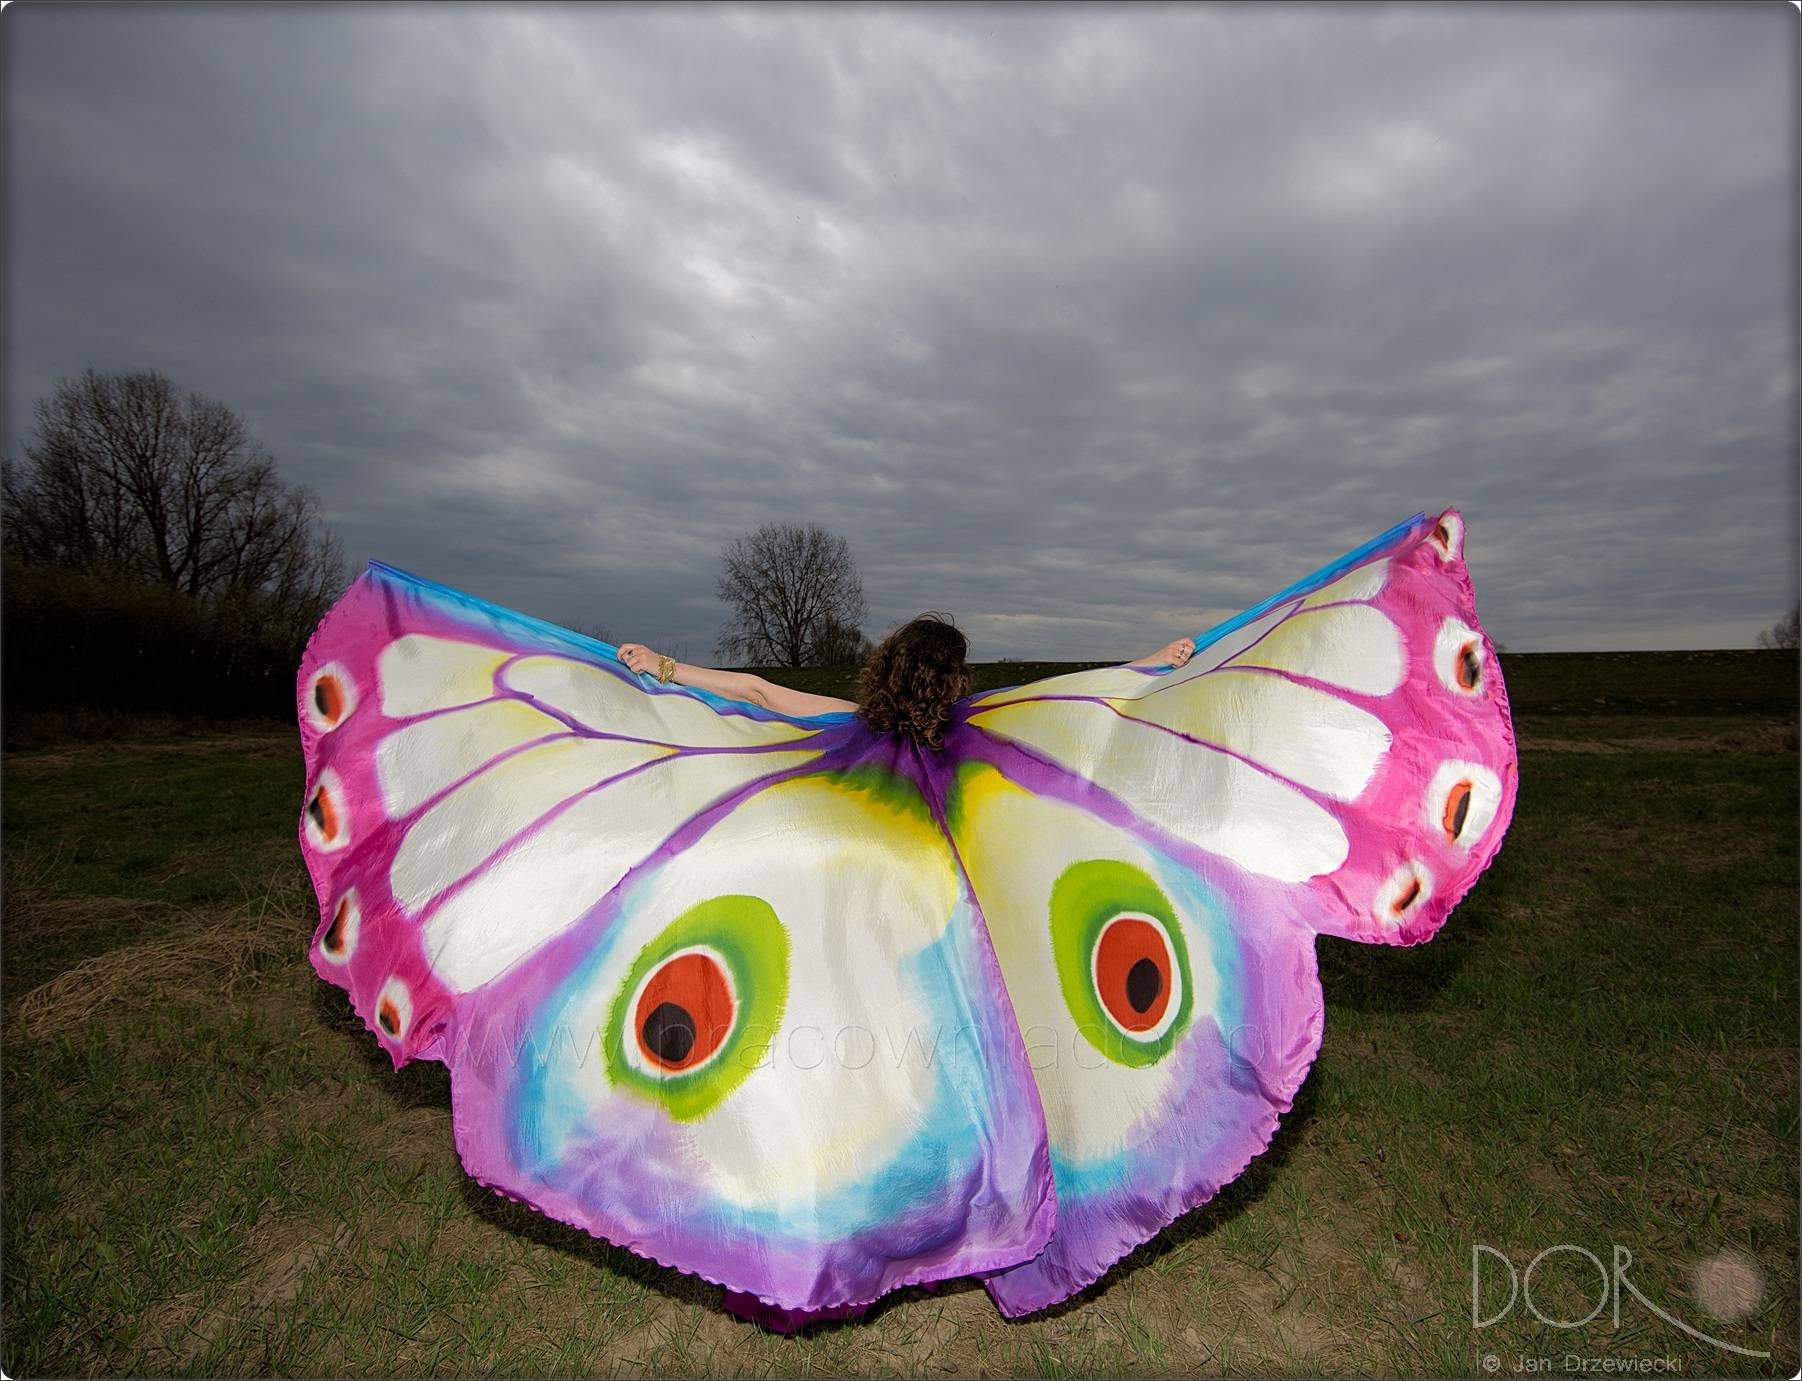 Mariposa monarca original alas de Isis de seda pintadas a mano